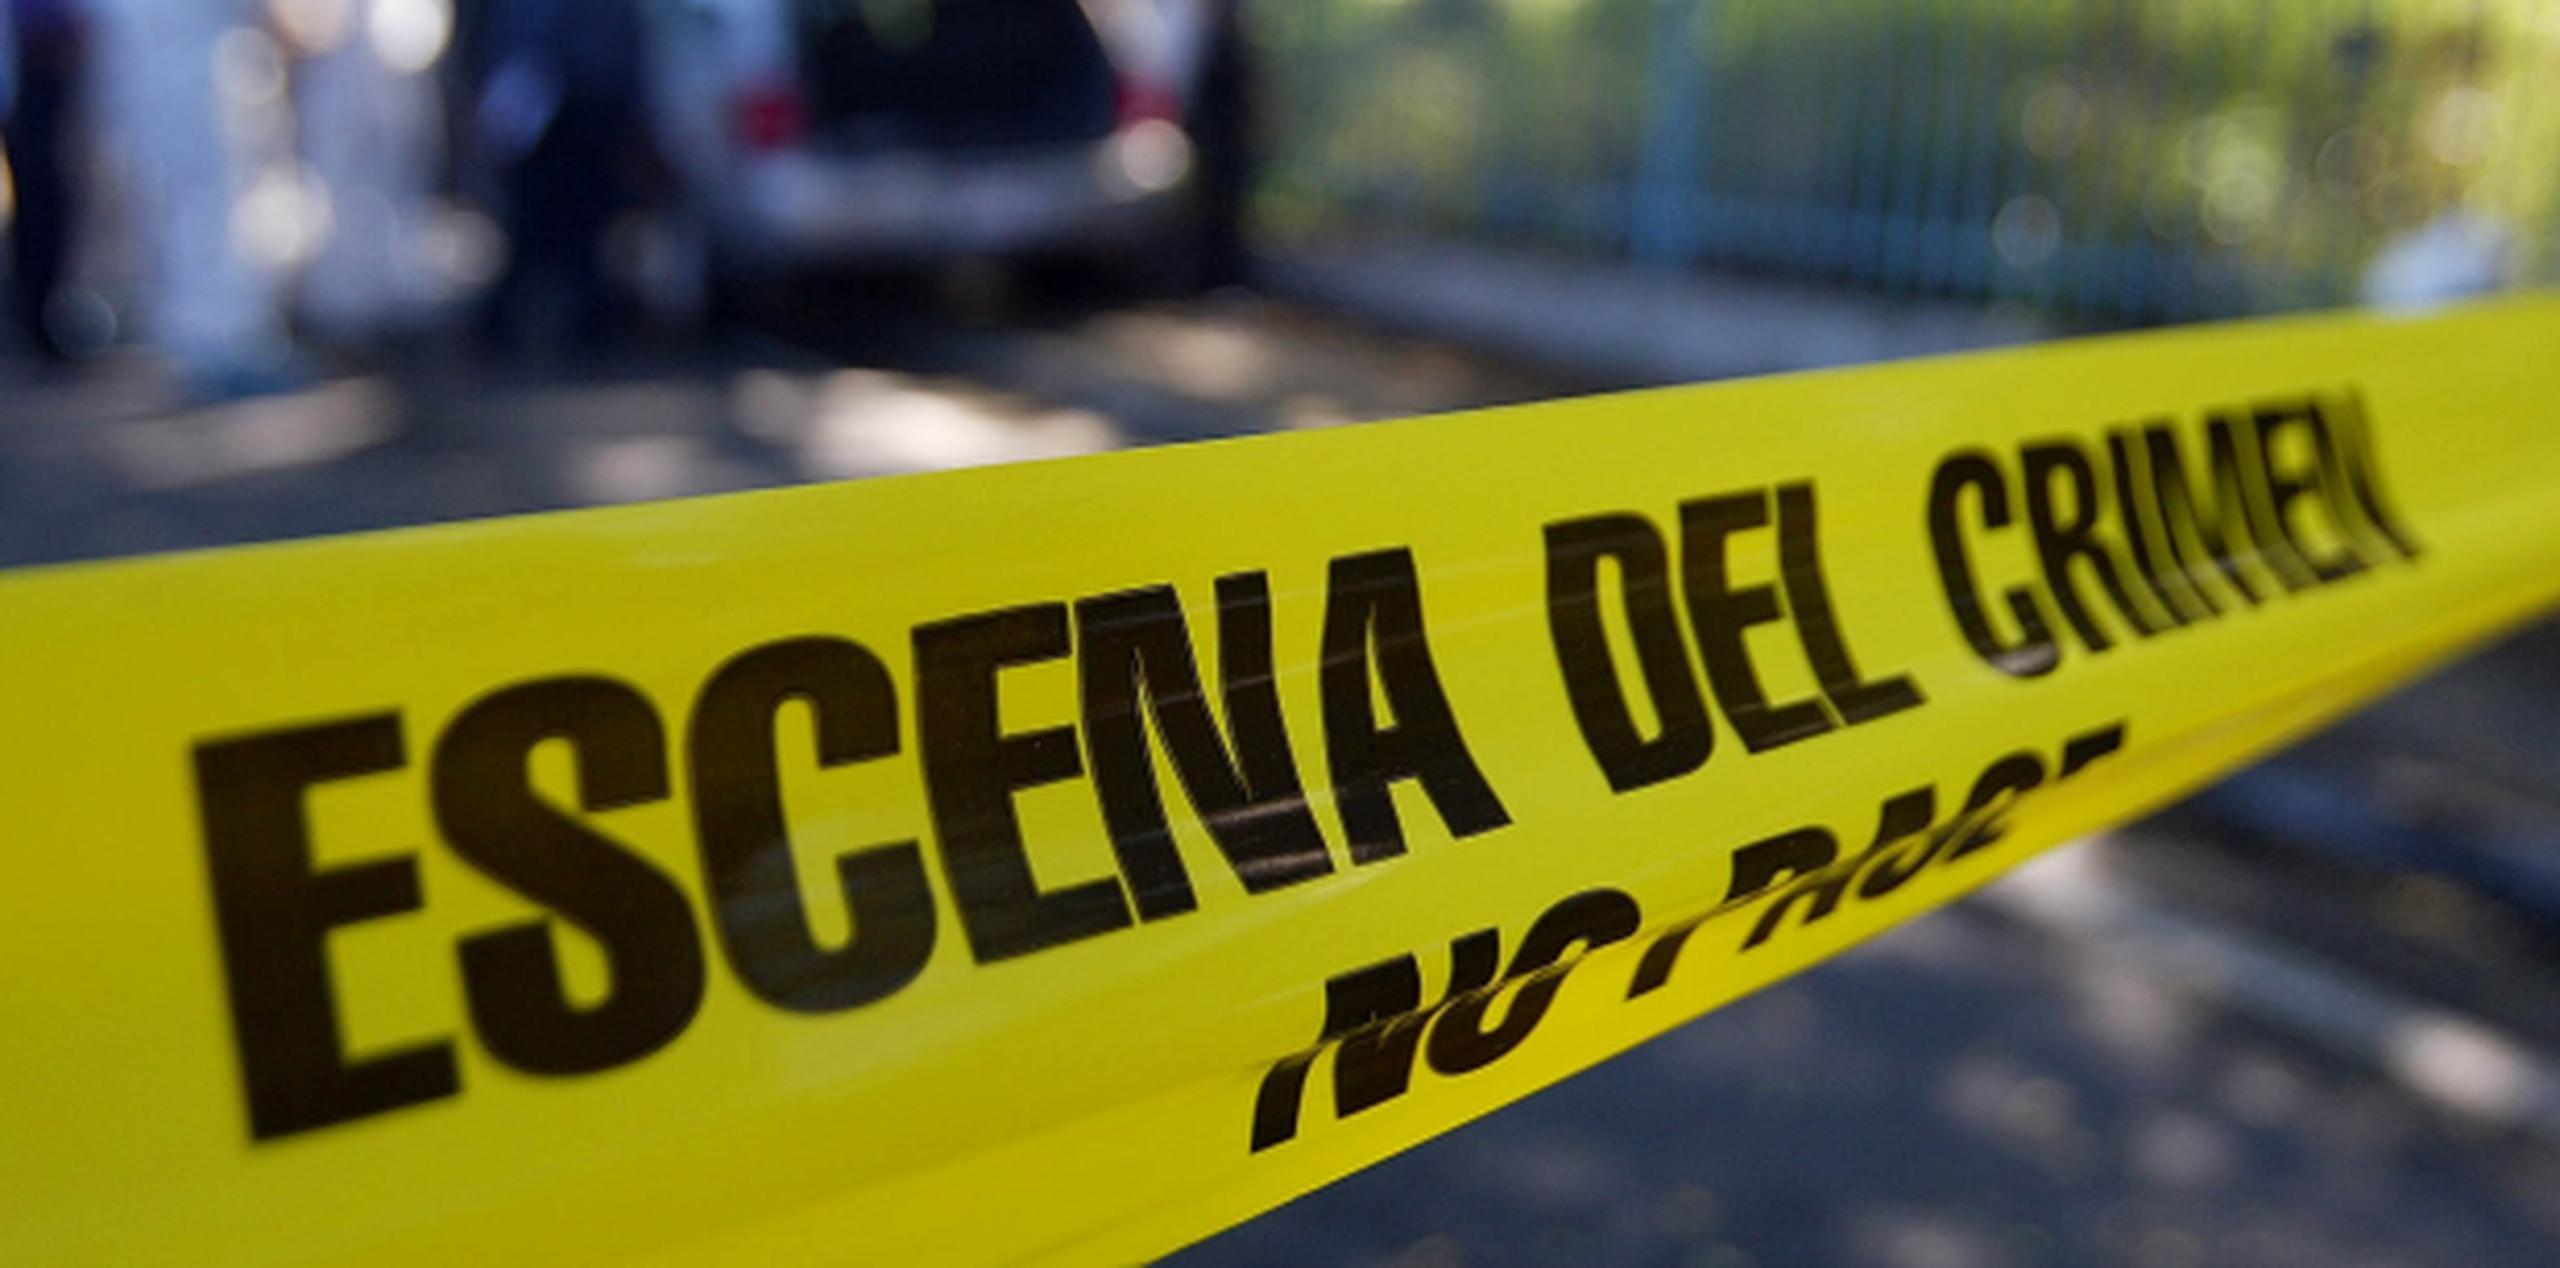 La cifra de asesinatos en el área policíaca de San Juan ascendió a 107, nueve más que los reportados a esta fecha en el 2016, lo que representa un incremento de un 9% según las estadísticas preliminares de la Policía. (Archivo)